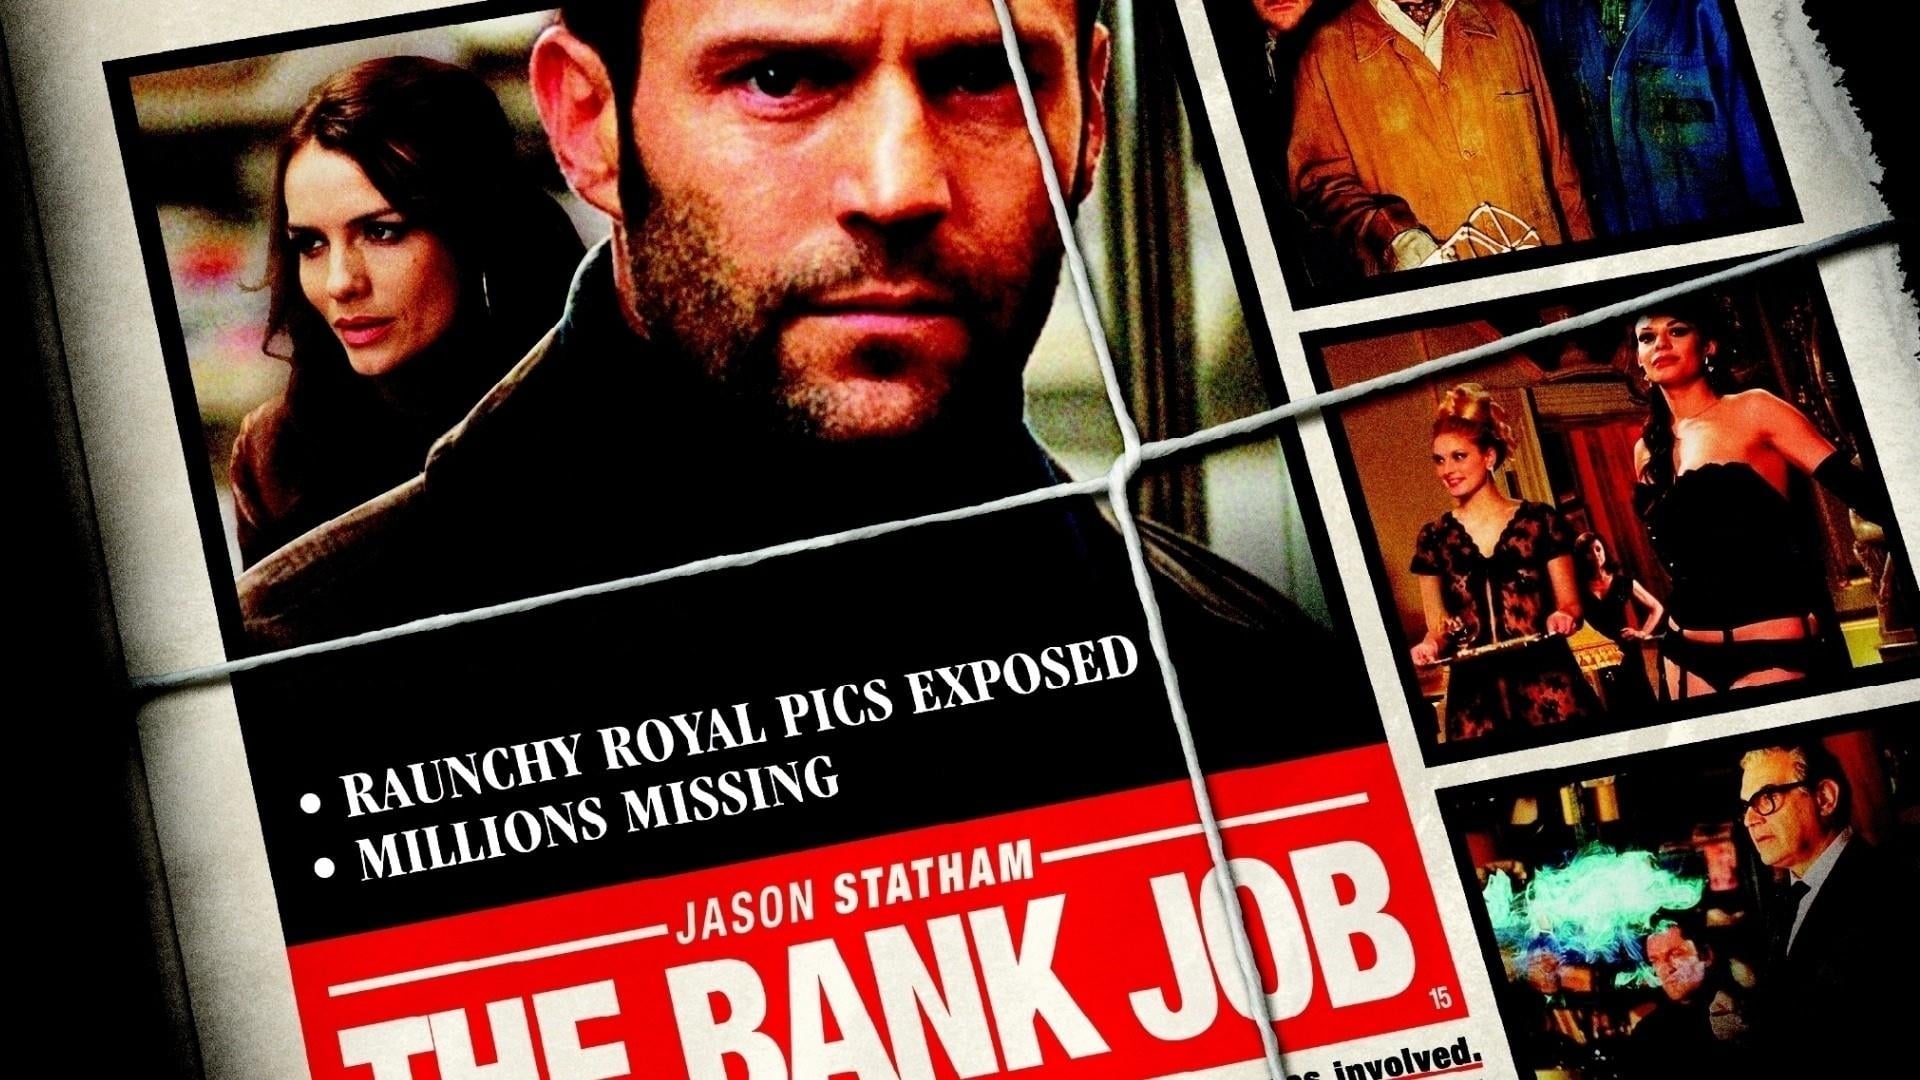 movies like bank job